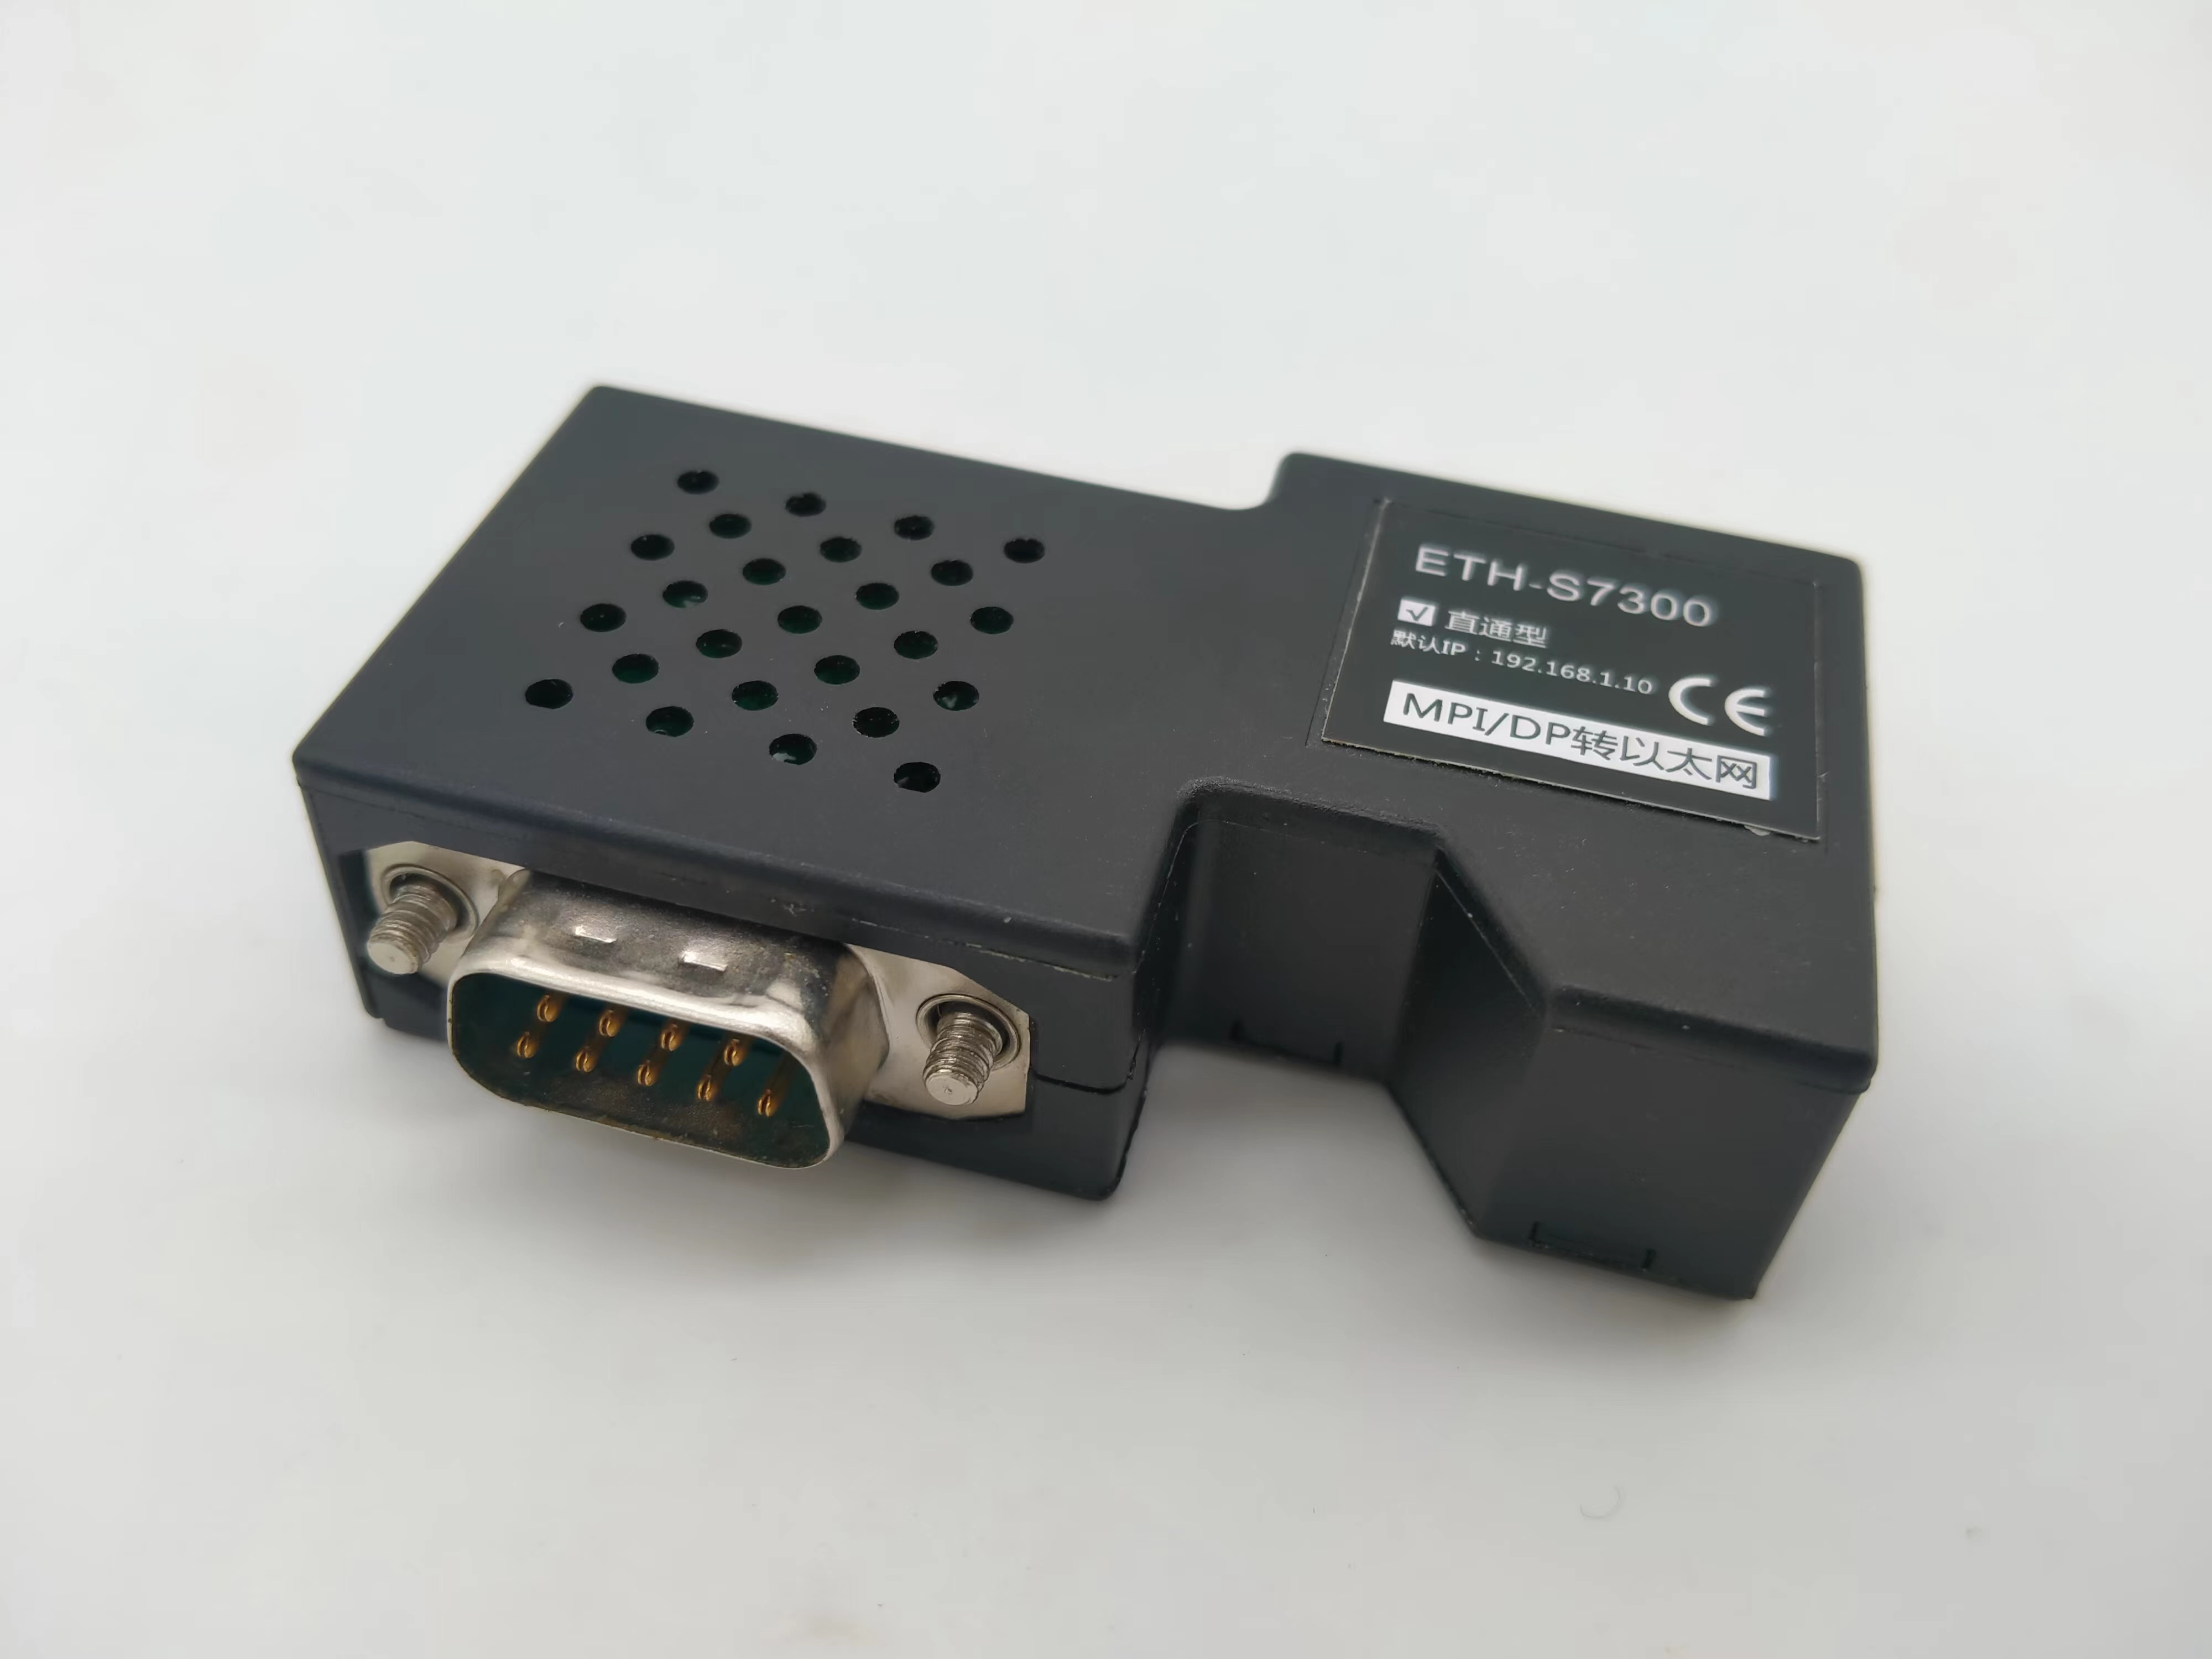 如何简单两步实现WITLINE-BOX-4G配合ETH-S7300与西门子的远程通讯